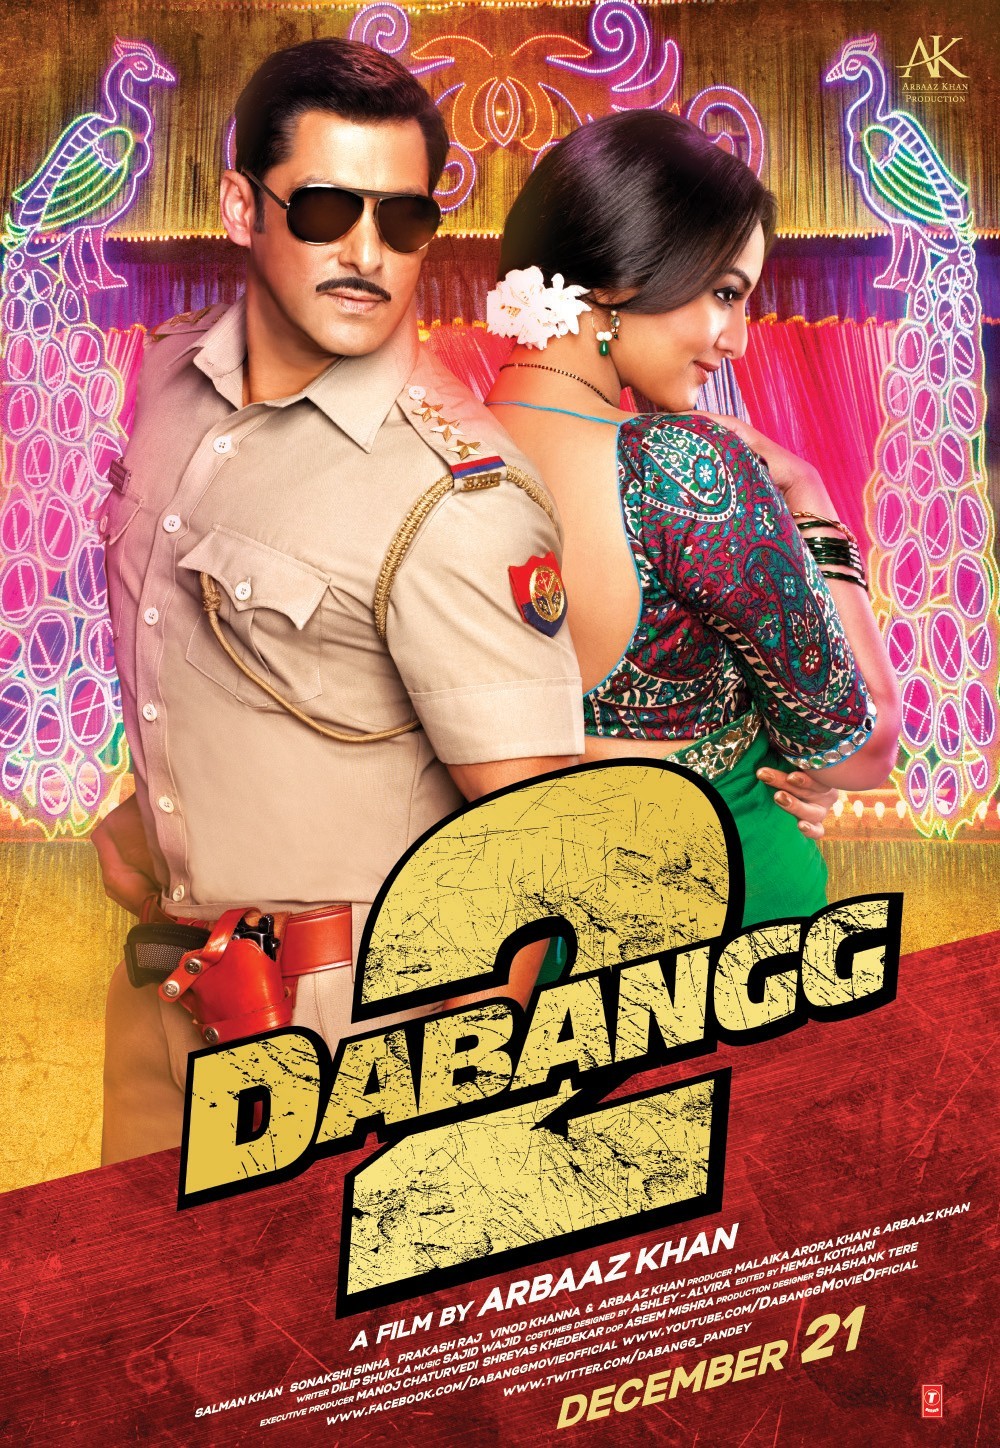 Dabangg 2 (2012) Watch Full Movie Free Online - HindiMovies.to